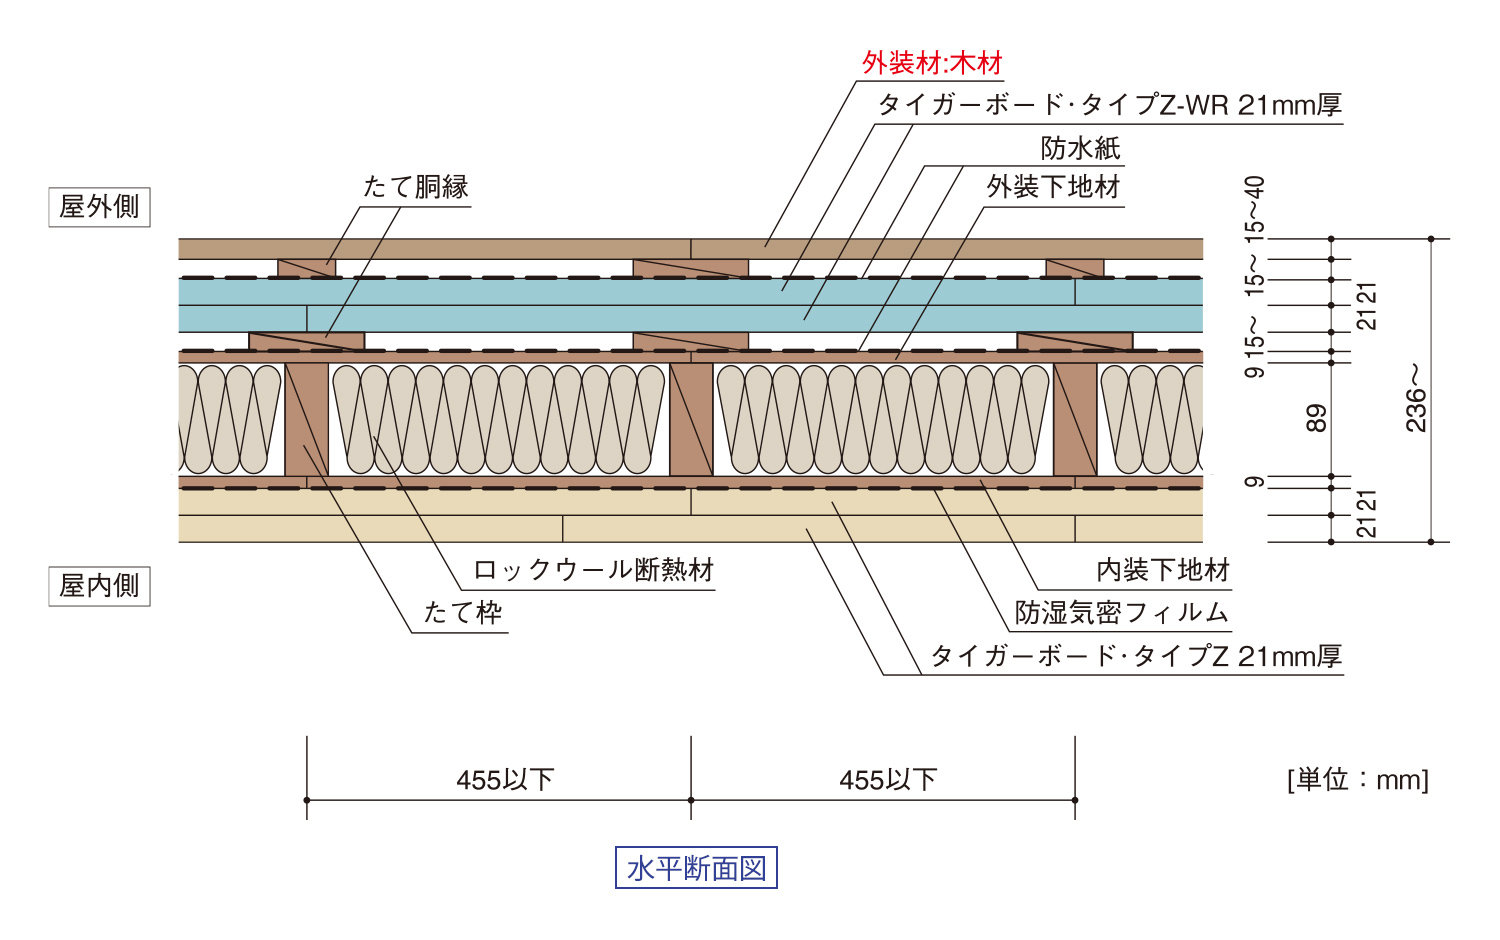 ツーバイフォー協会認定による外壁:枠組:木材仕上げ｜水平断面図